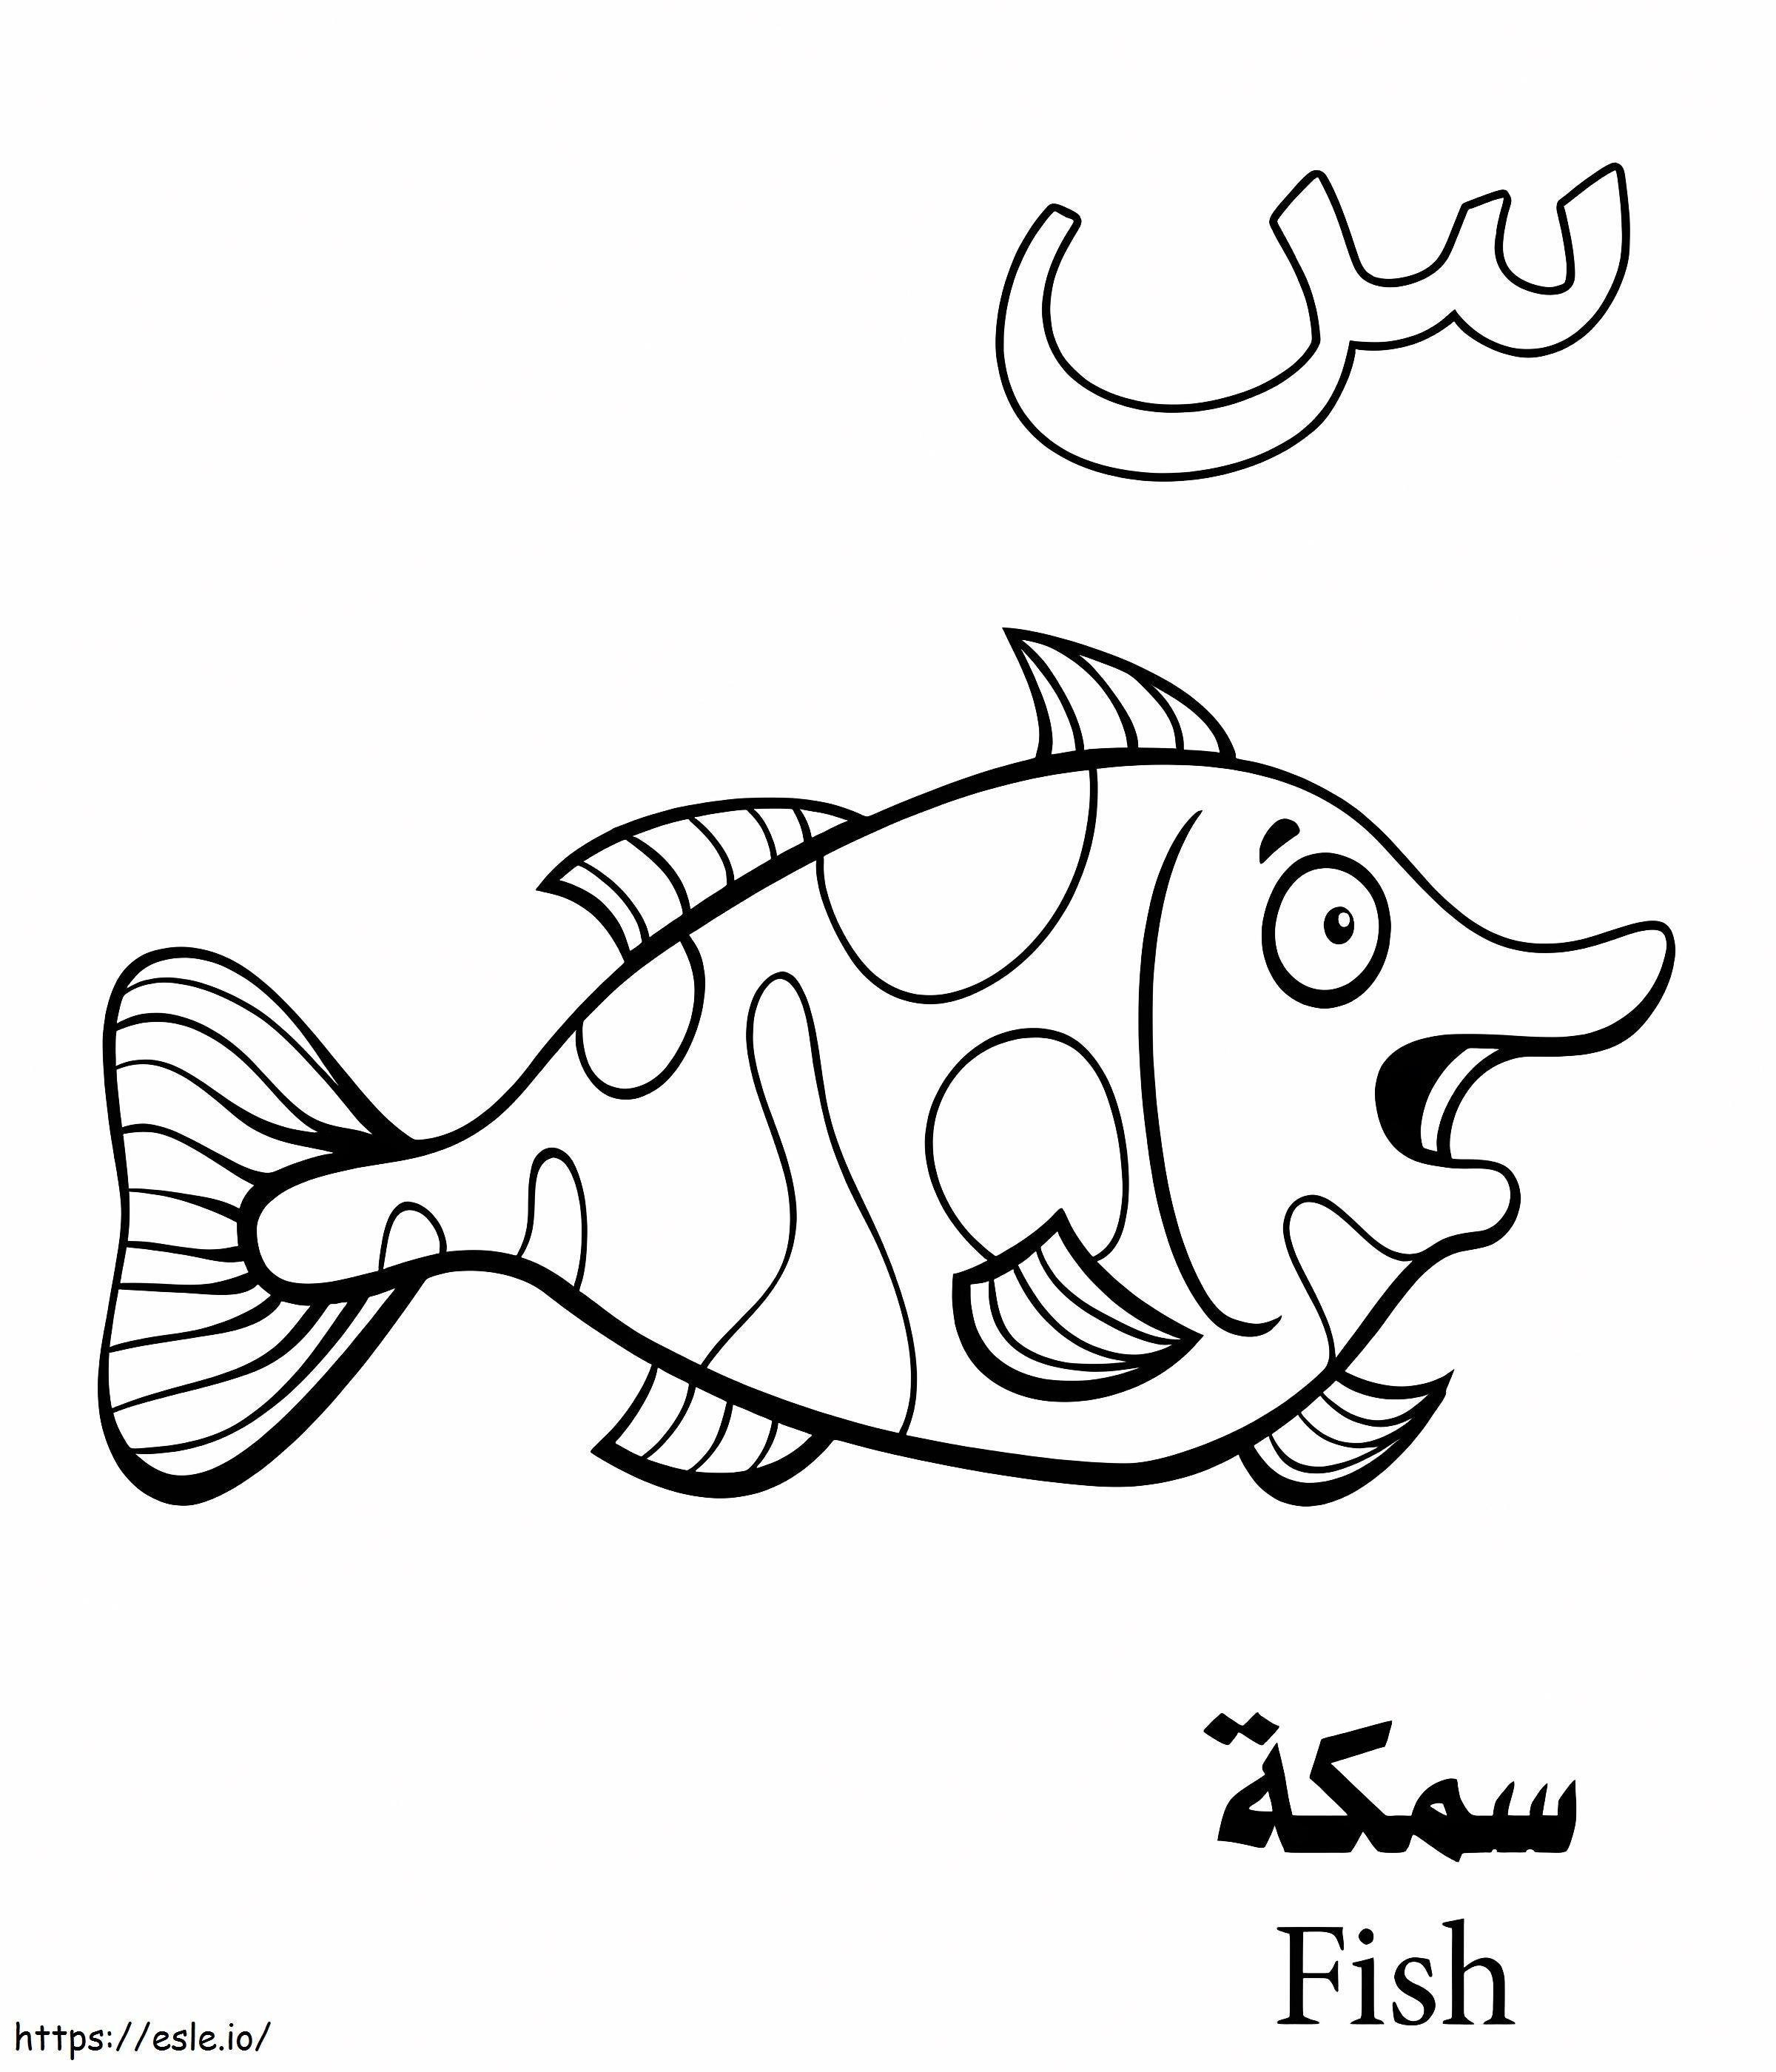 Arabisches Fisch-Alphabet ausmalbilder